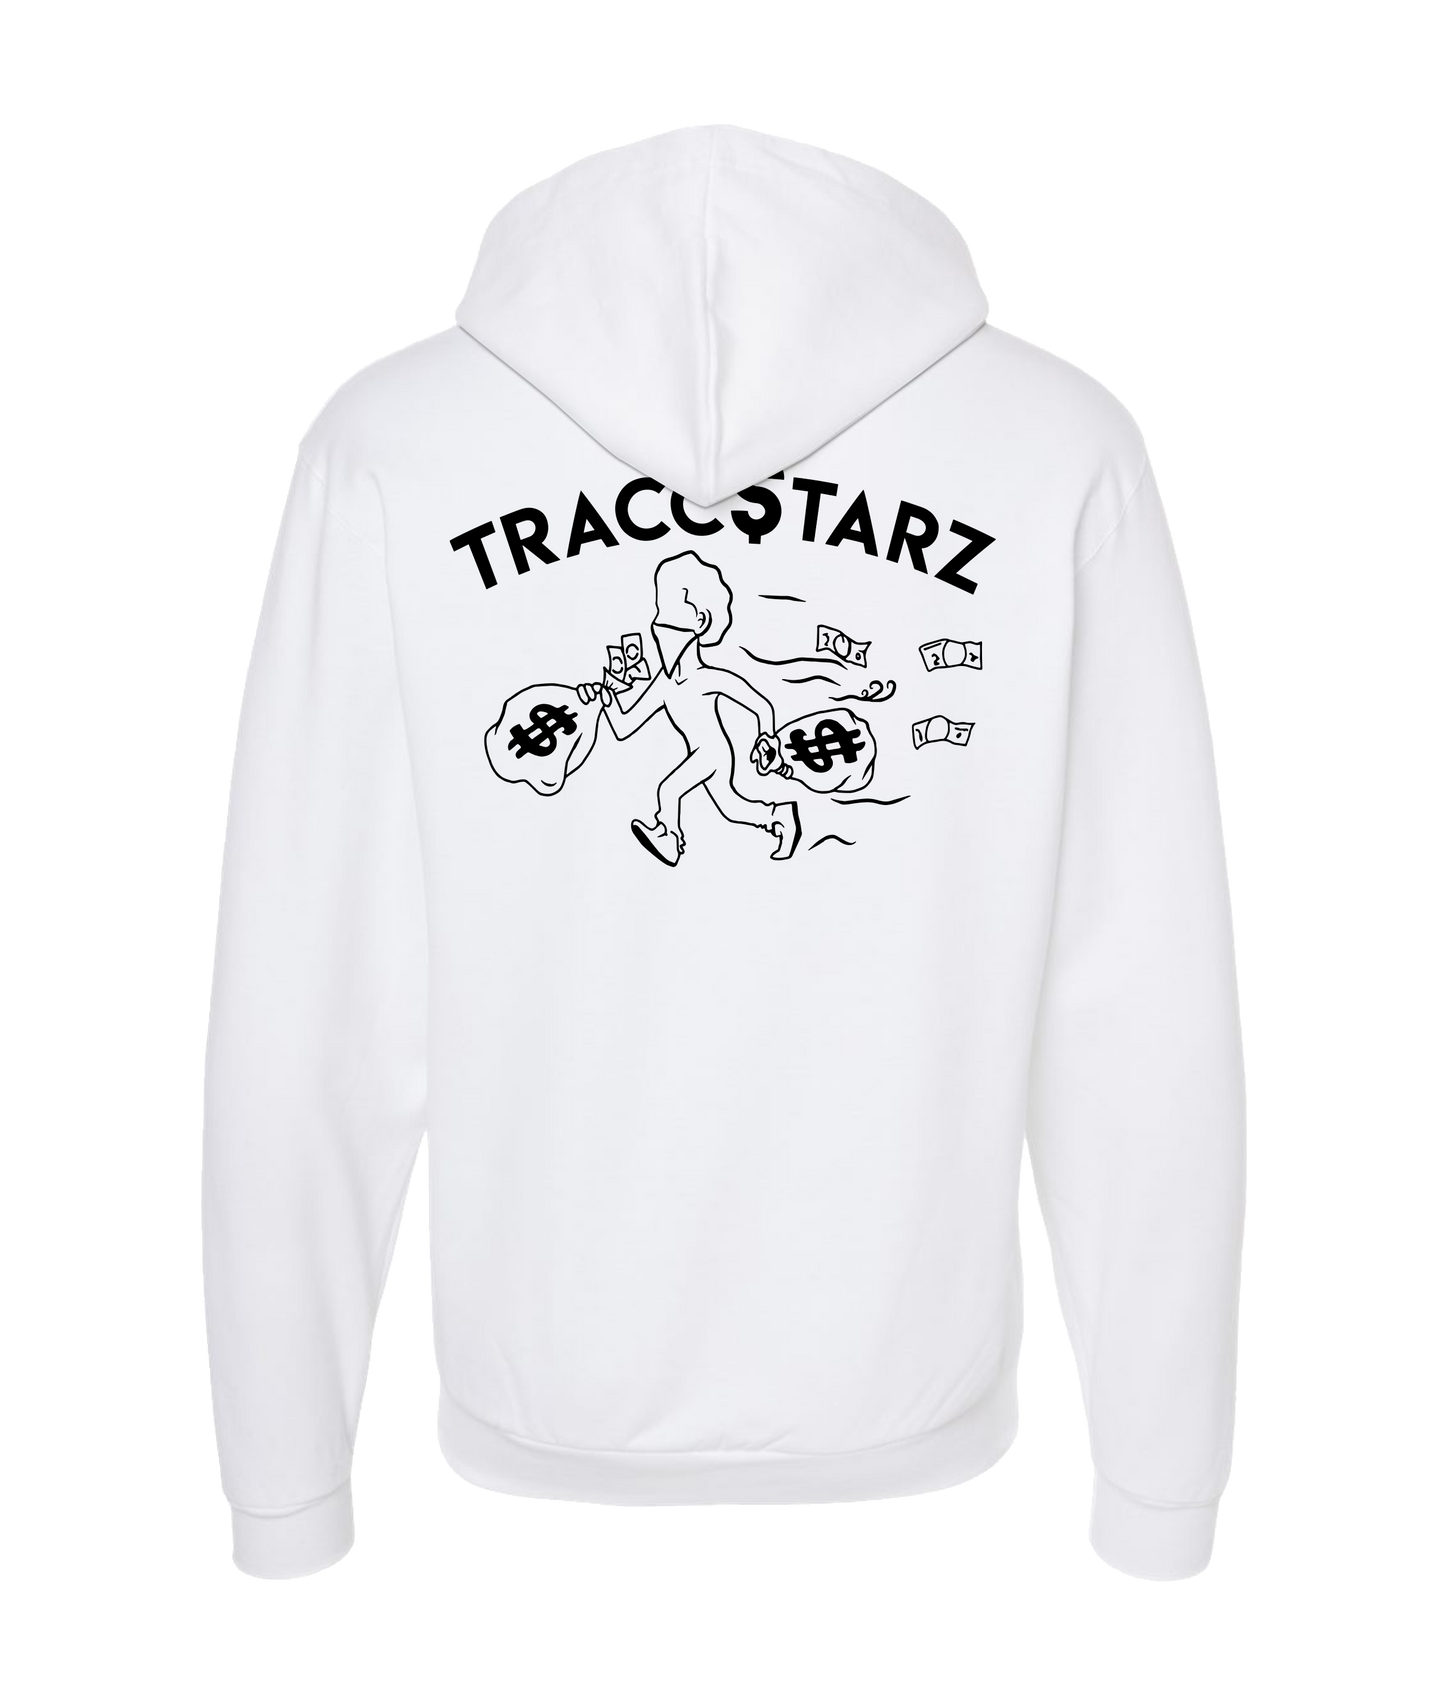 TraccStarz - Runnin - White Zip Up Hoodie